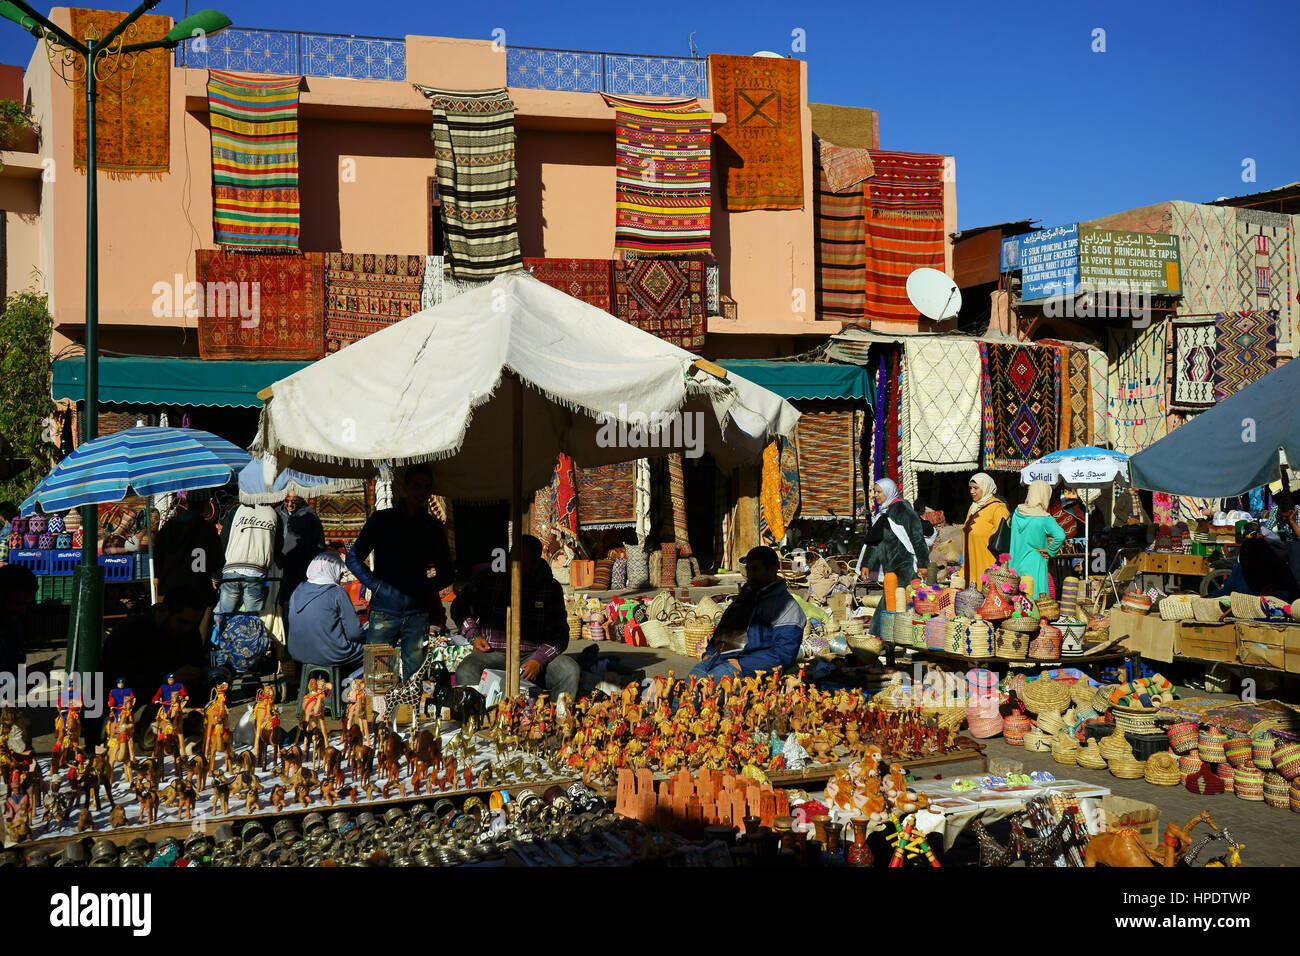 Alfombras y tiendas de recuerdos en el zoco de la Medina de Marrakech, Marruecos Foto de stock